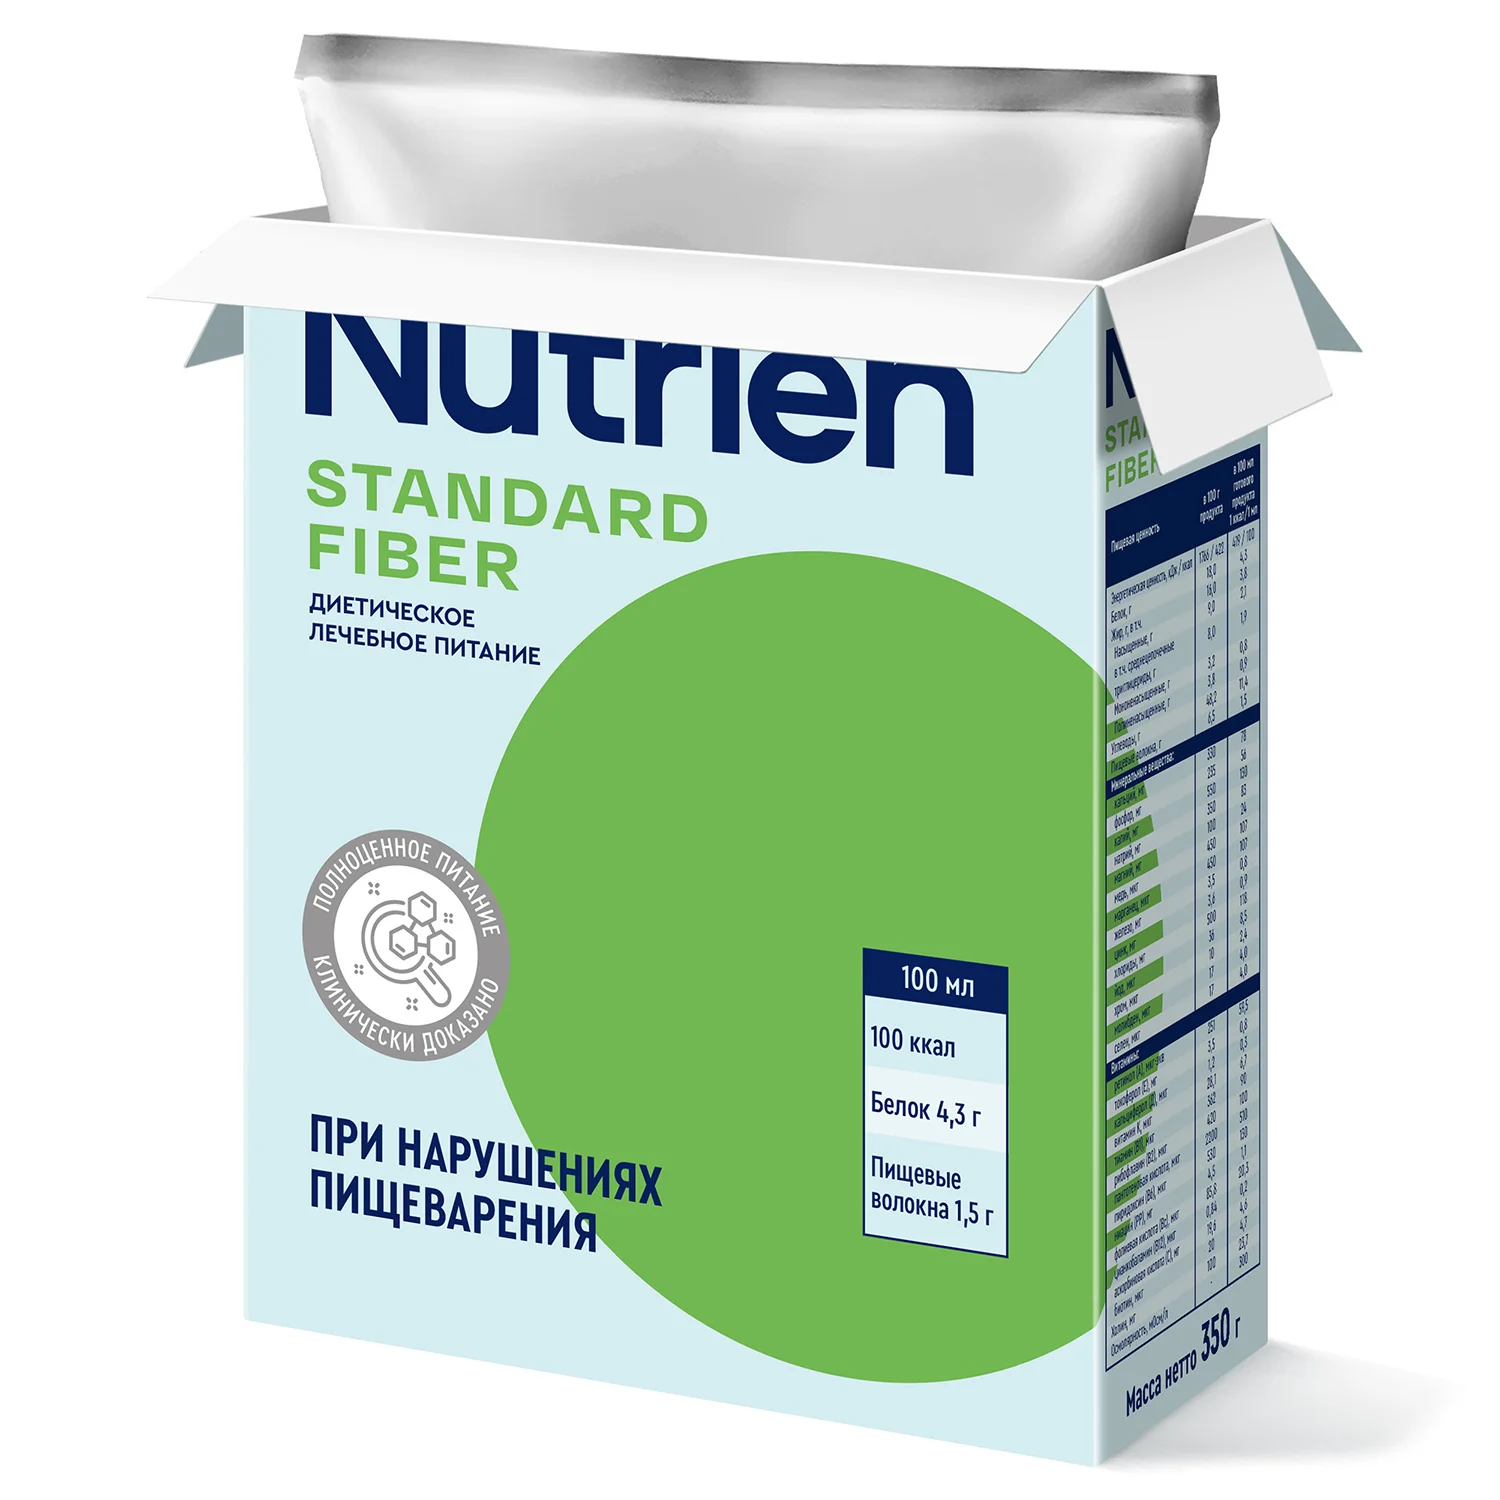 Nutrien Standard Fiber - 3